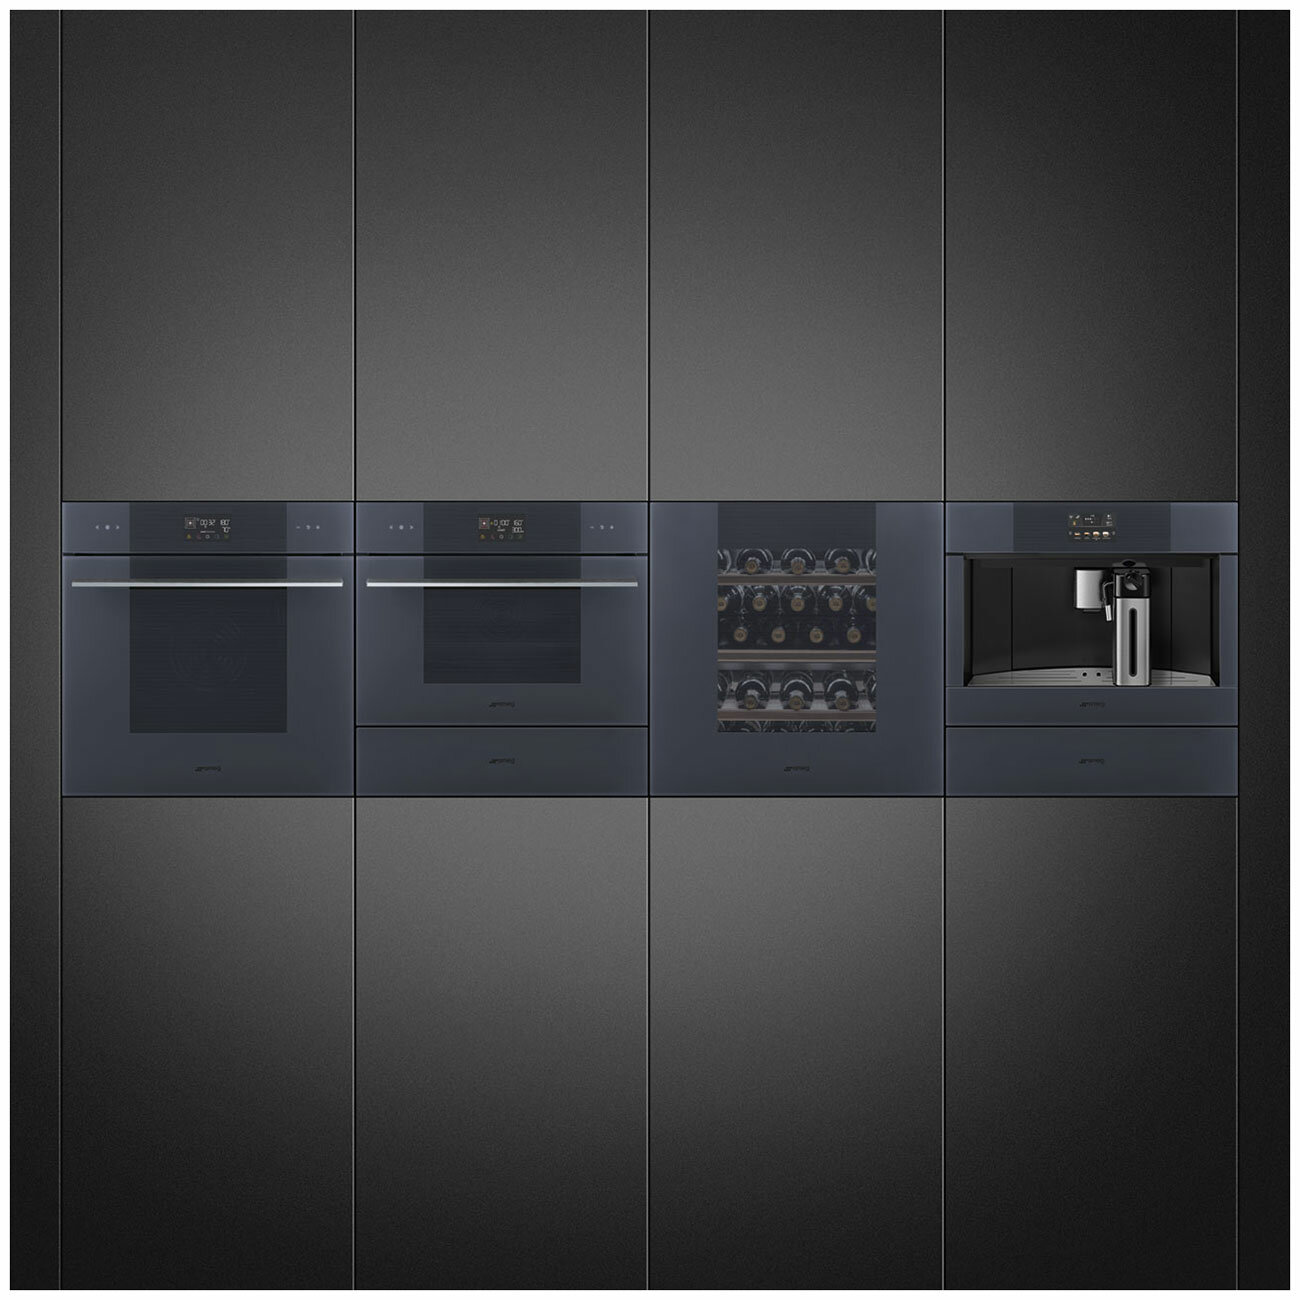 Встраиваемый шкаф для подогревания посуды Smeg CPRT115G стекло Neptune grey открывание PUSH